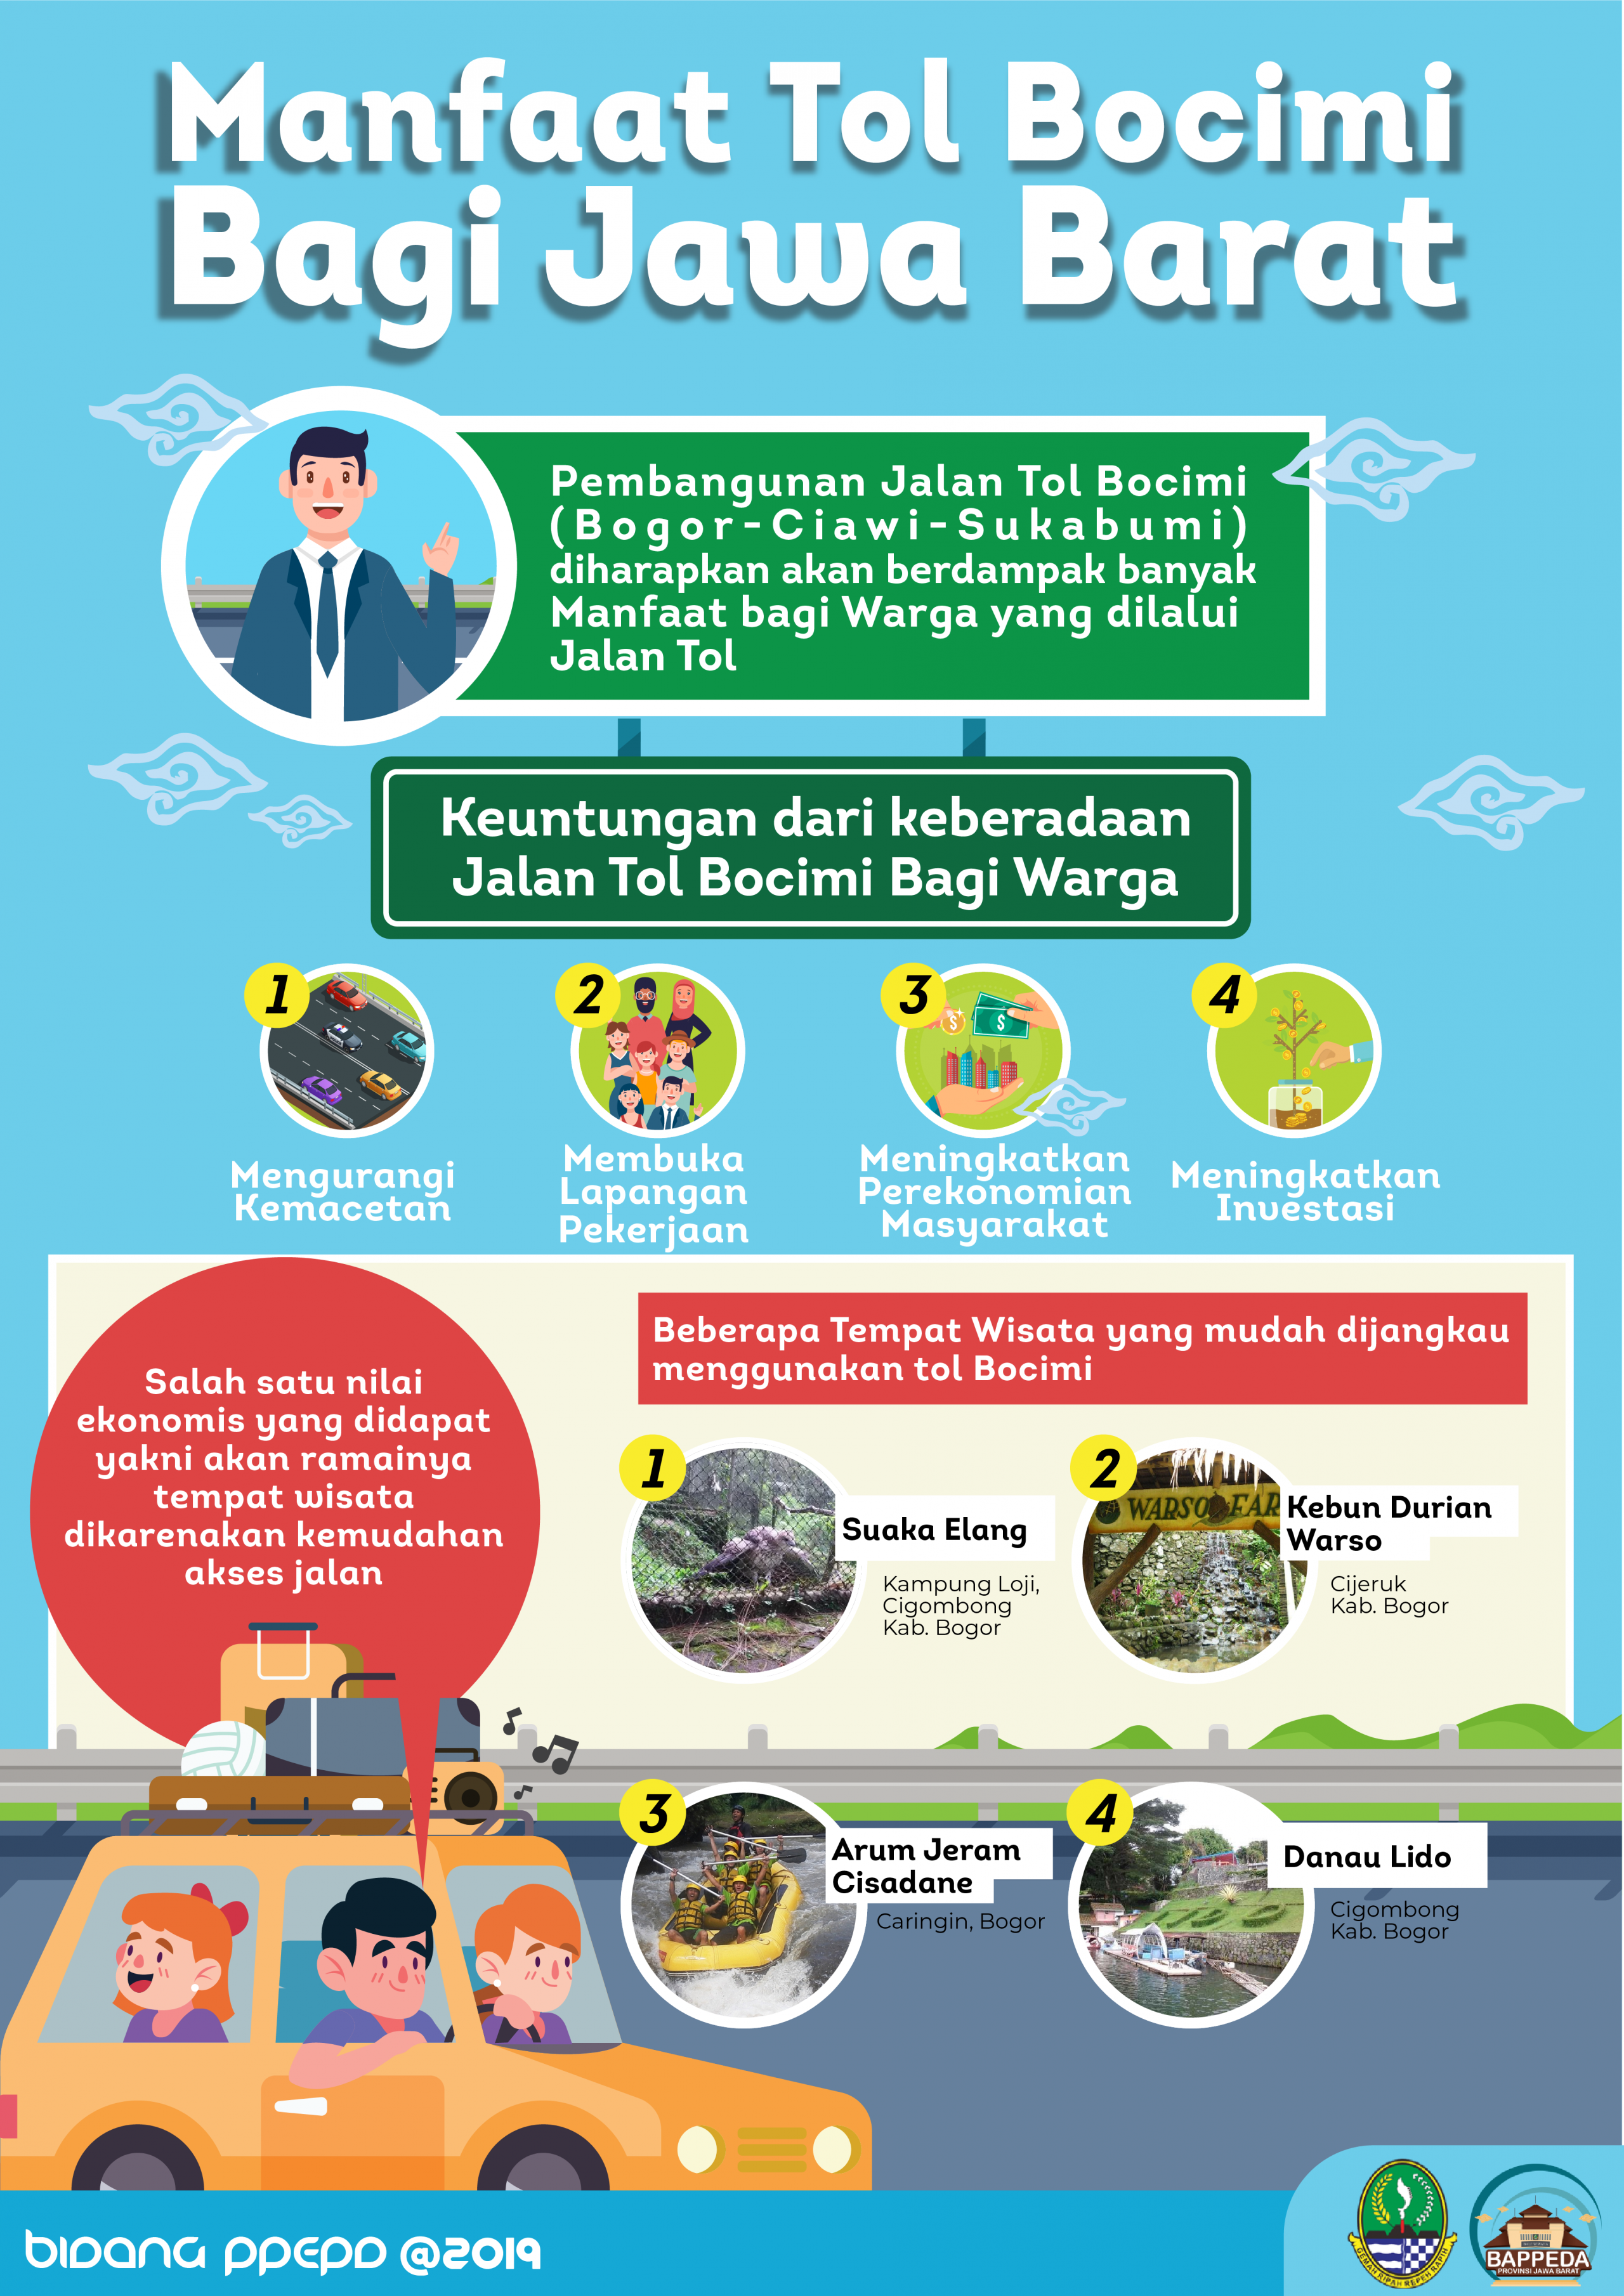 saberpungli jabar - Manfaat Tol Bocimi Bagi Jawa Barat